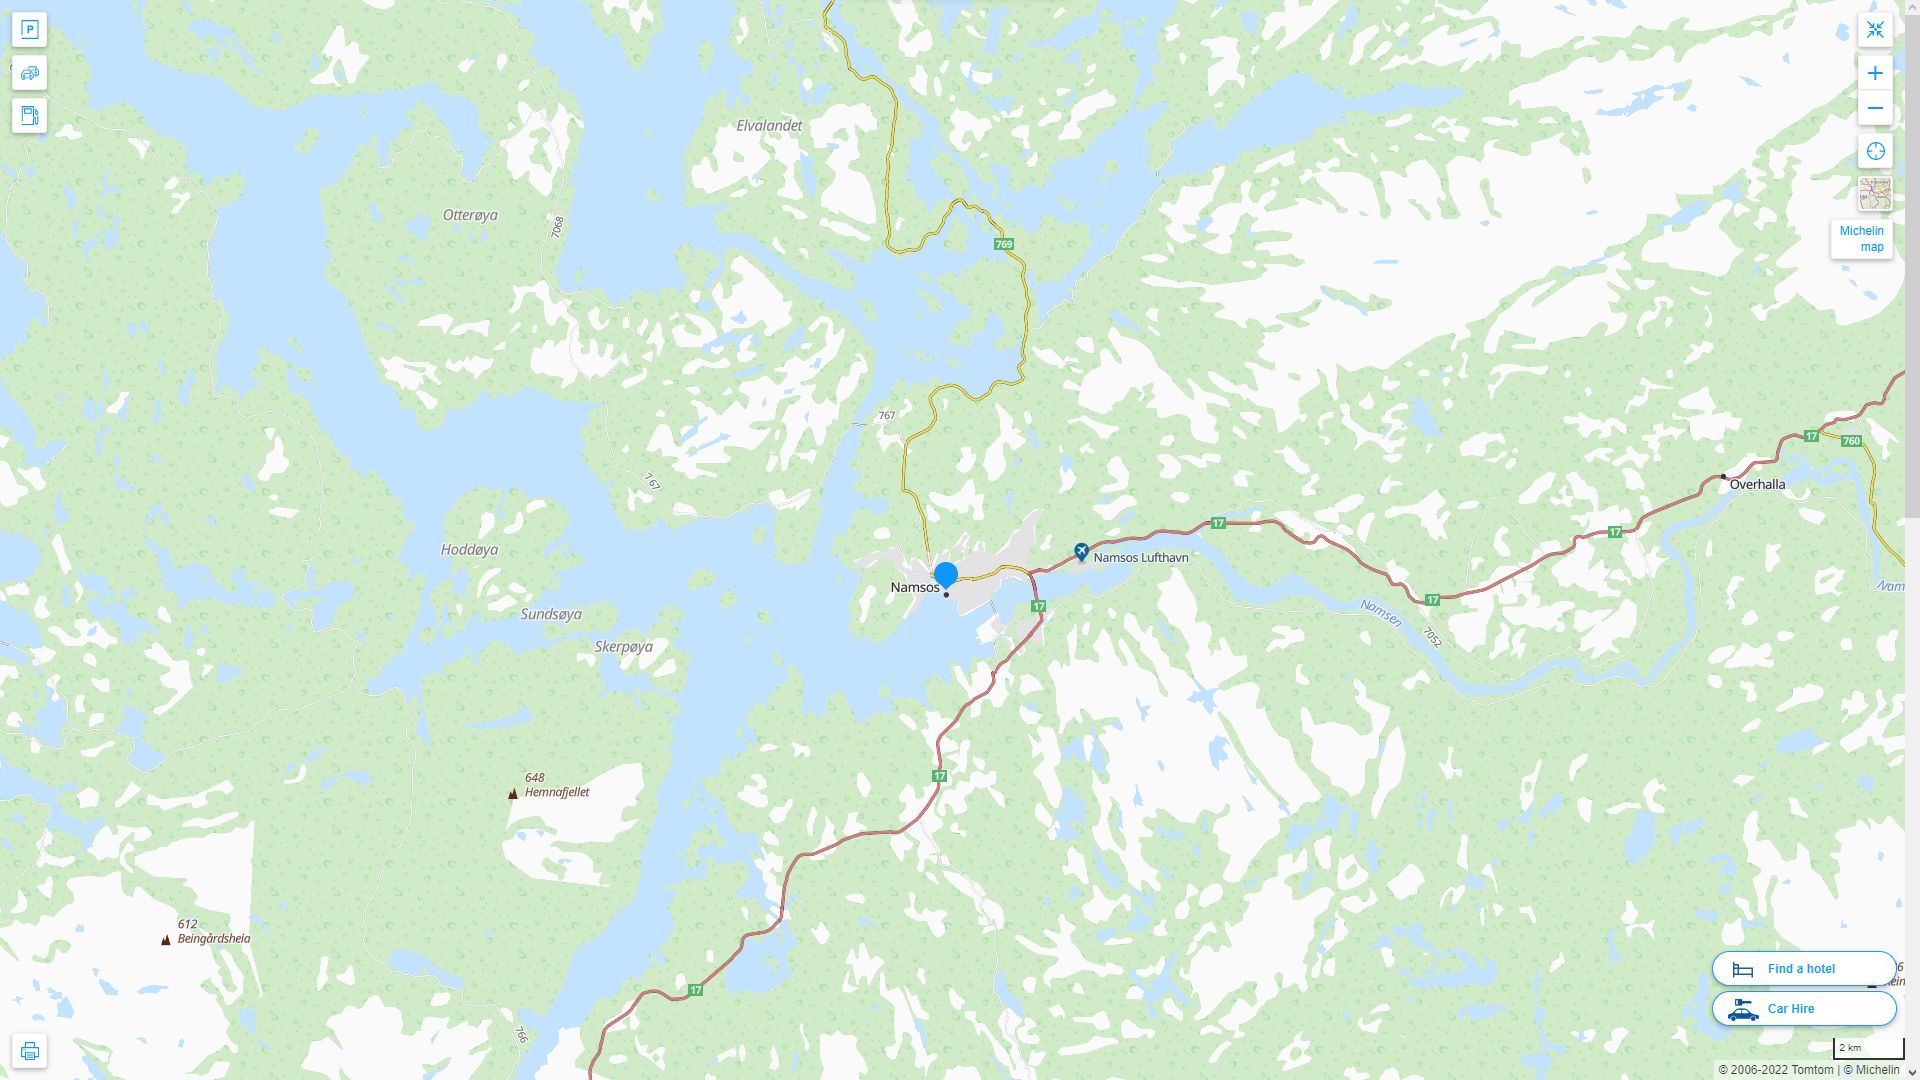 Namsos Norvege Autoroute et carte routiere